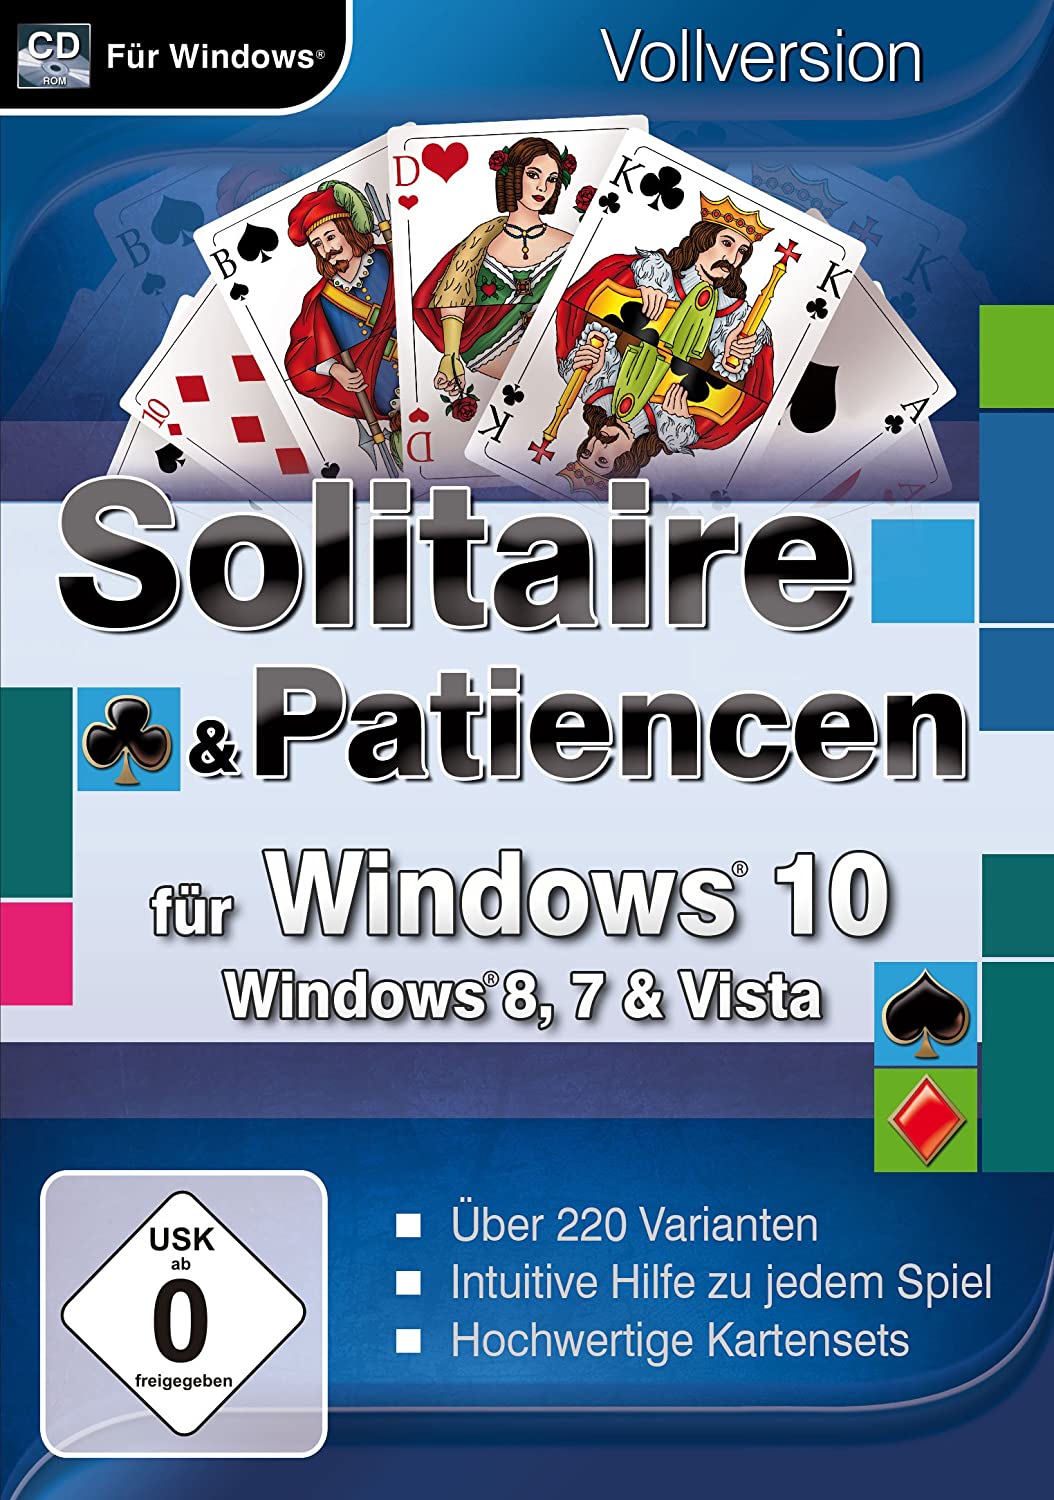 Solitaire & Patiencen für Windows 10 und Windows 8, 7, Vista [PC]